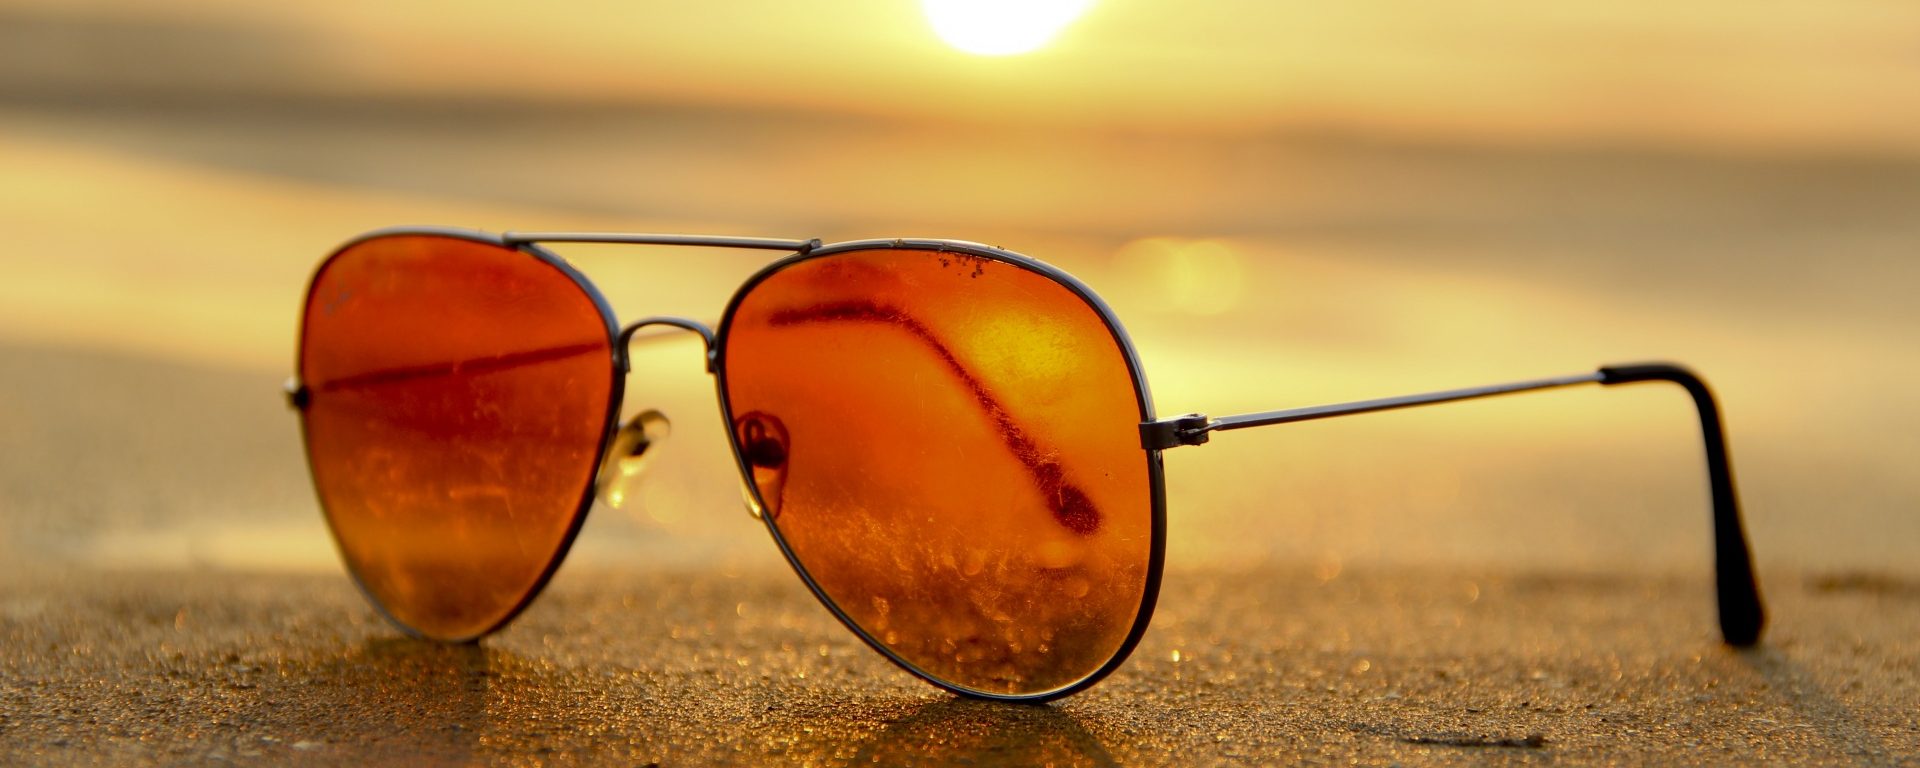 Perfekter UV-Schutz mit der richtigen Sonnenbrille